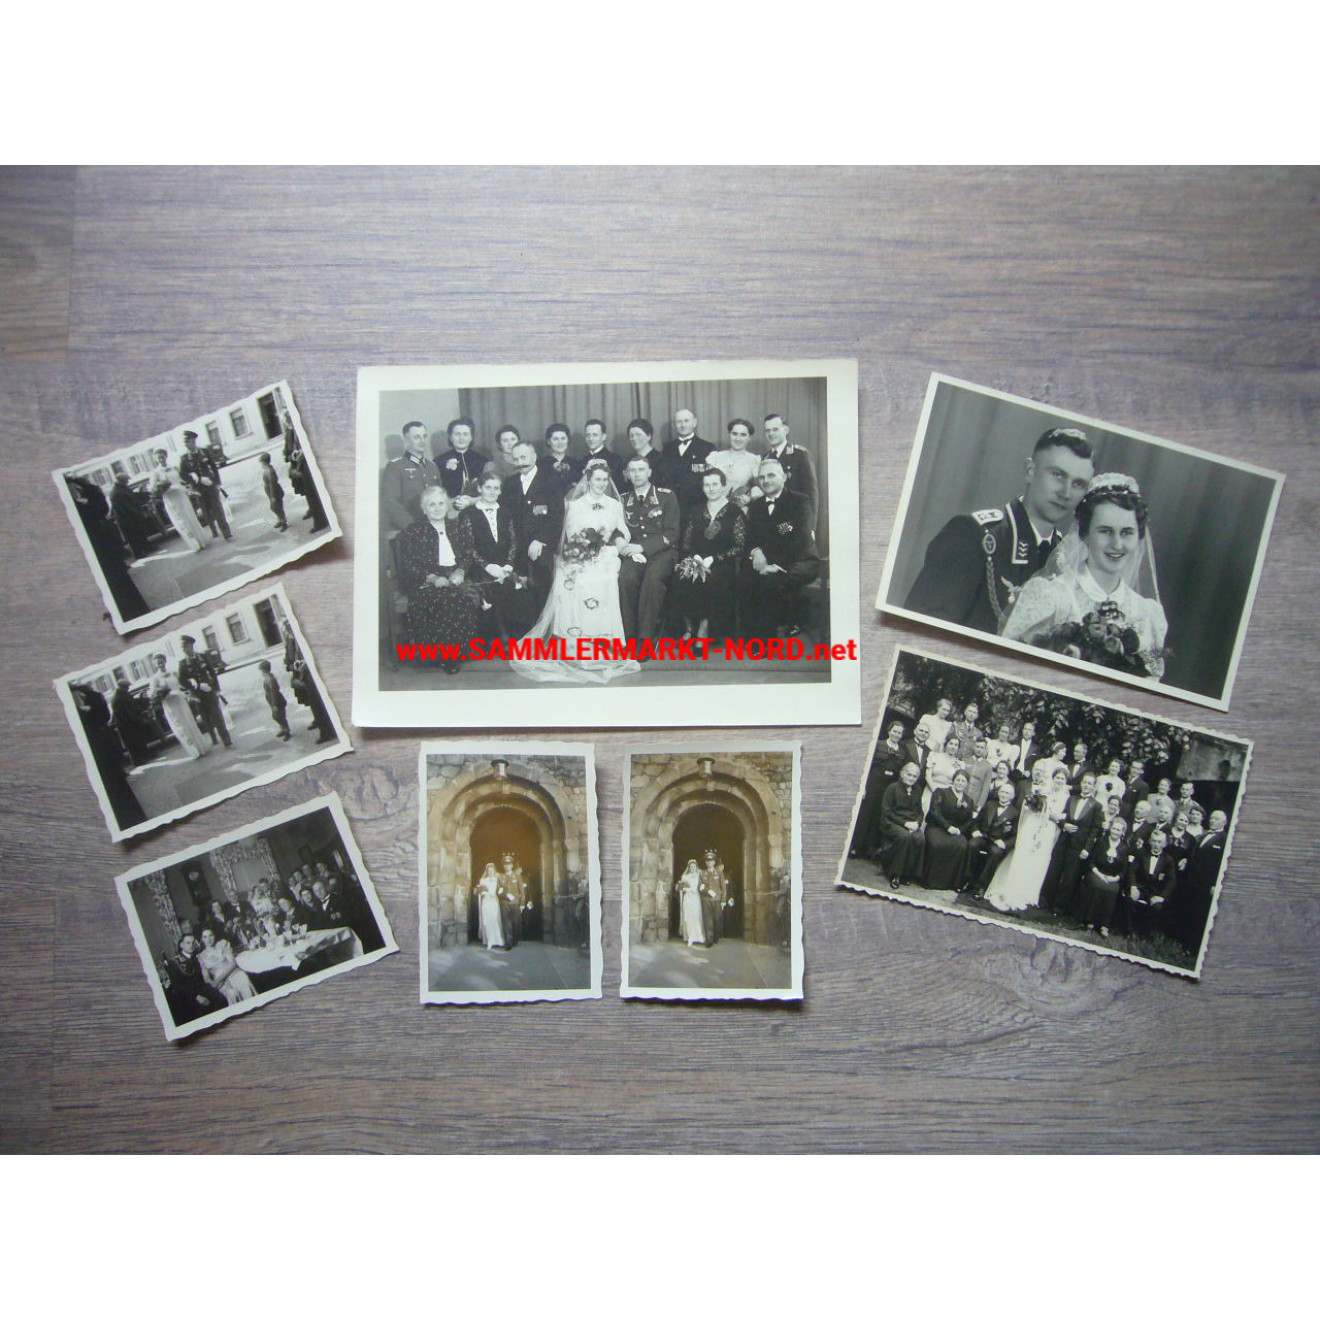 8 x Foto Luftwaffe Flak Rgt. 12 - Hochzeit eines Feldwebel